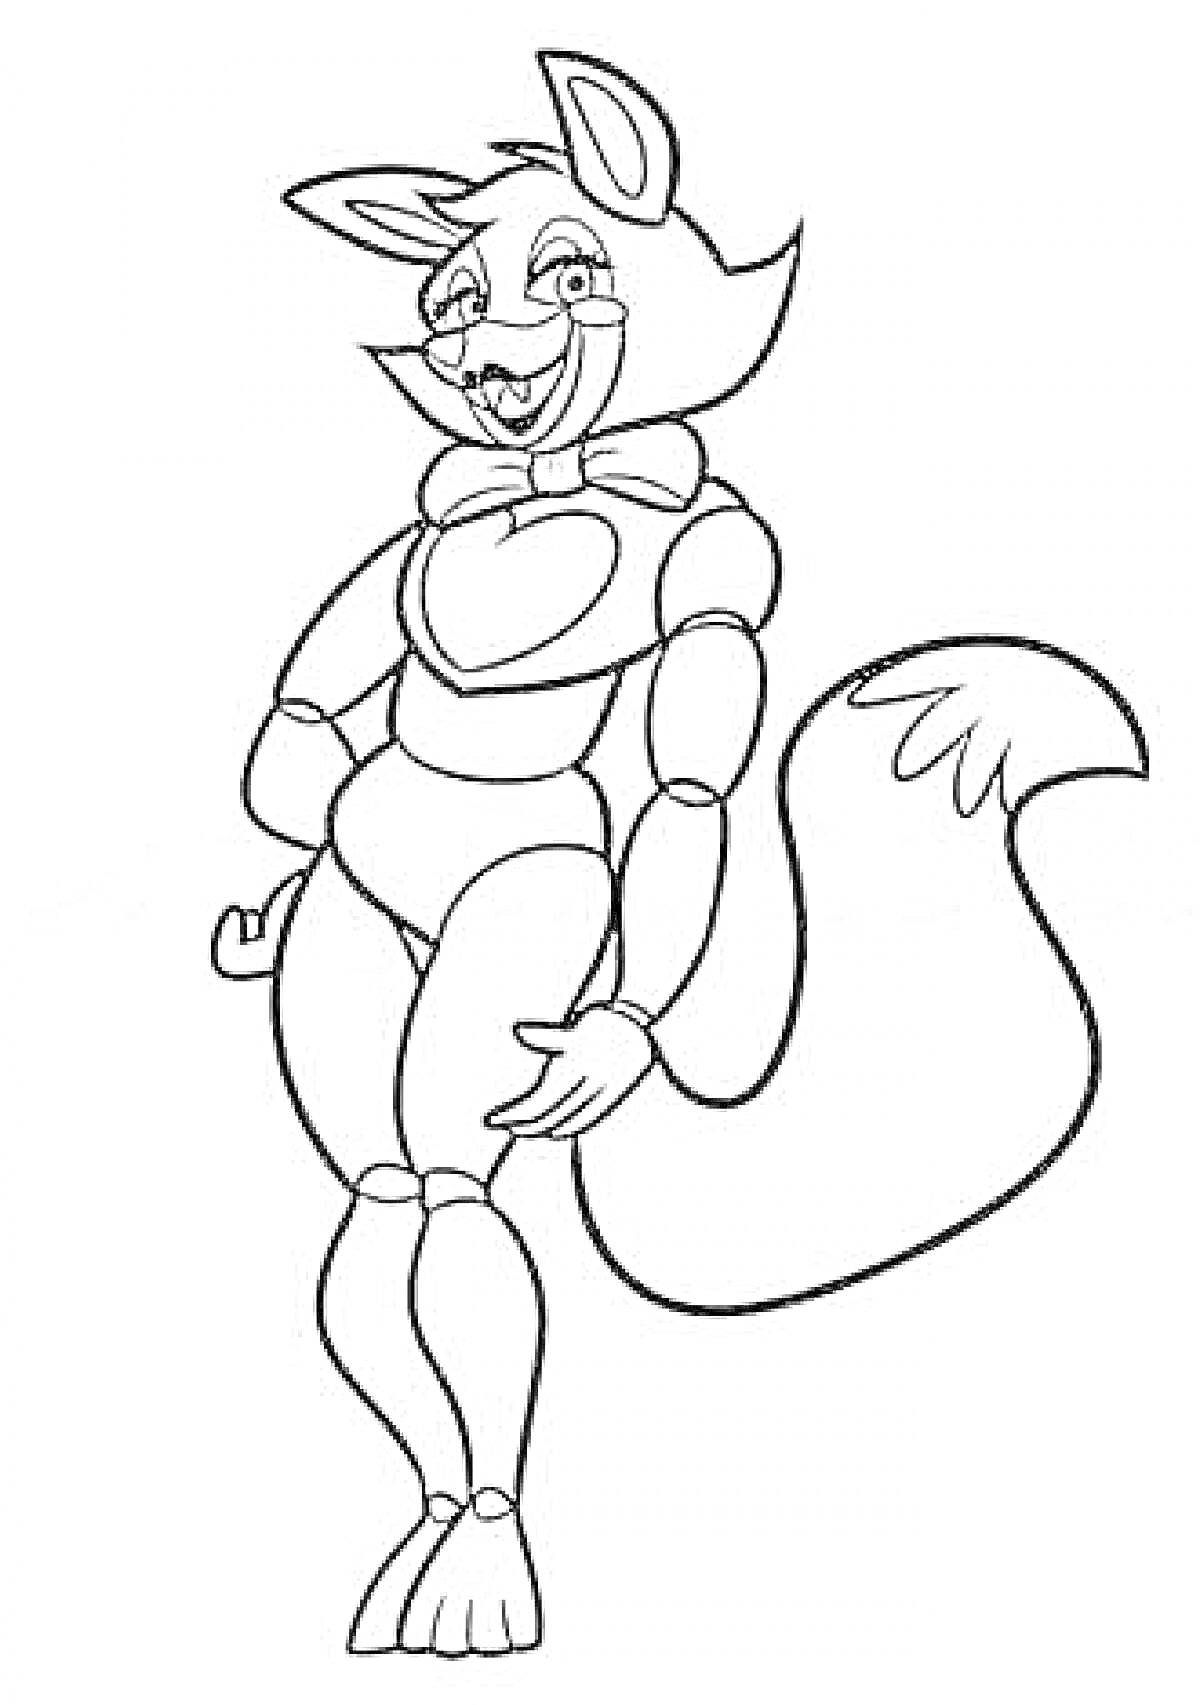 Лисичка-аниматроник с бантиком, поднятой правой лапой и хвостом